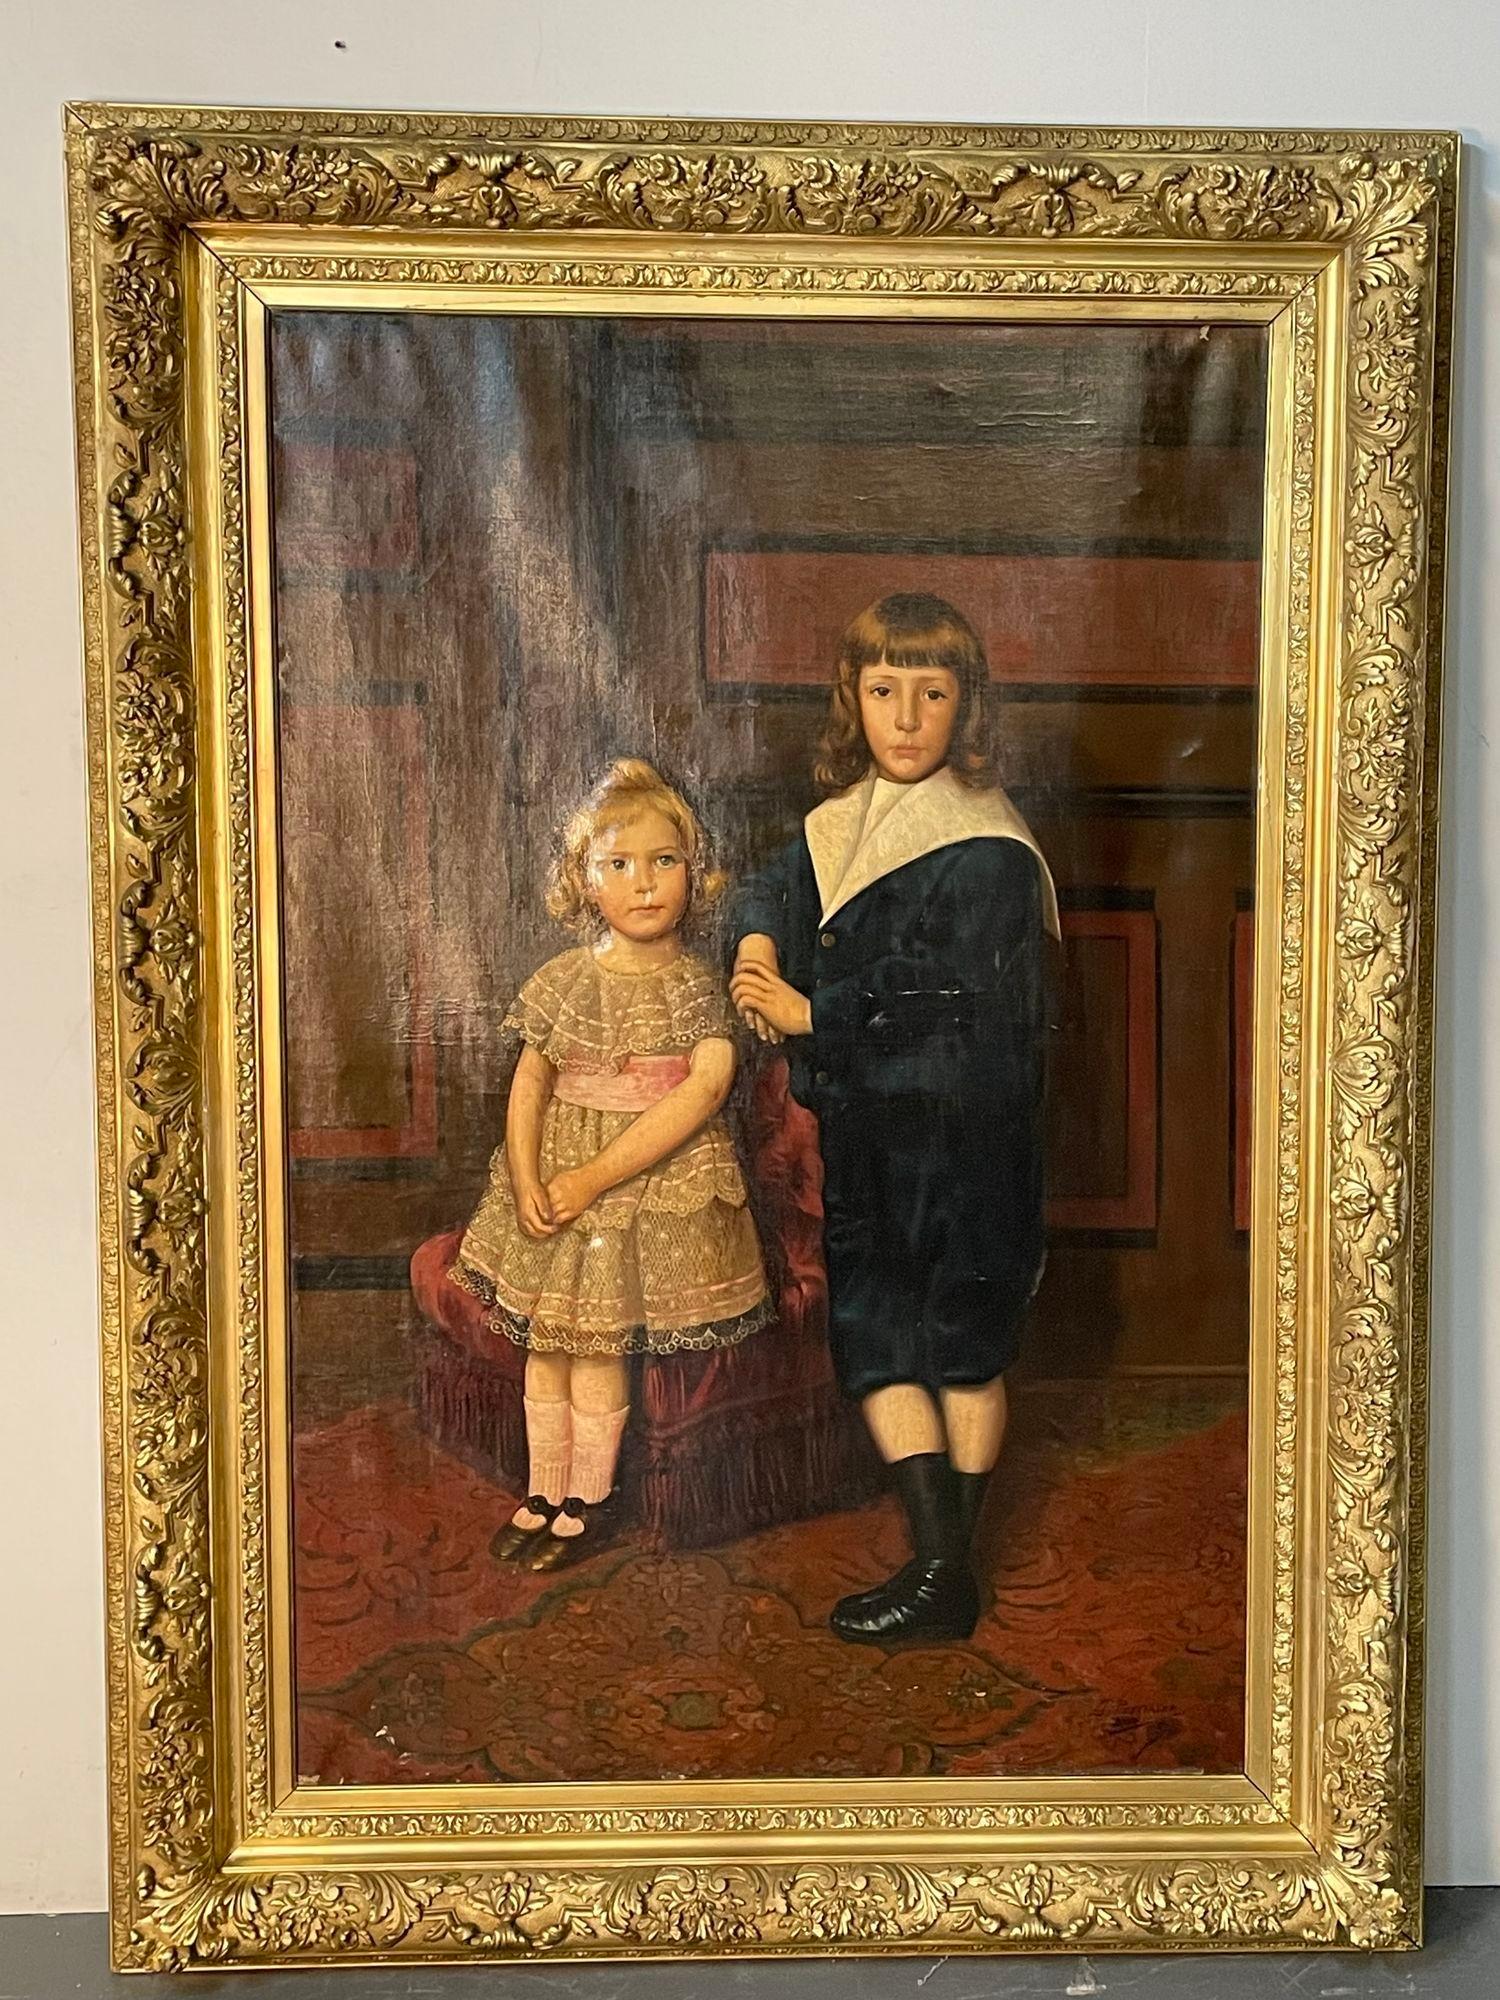 Ein palastartiges Öl auf Leinwand eines Porträts von Geschwistern, signiert J. Peellaert. Eine fein detaillierte Öl auf Leinwand eines Jungen und seiner Schwester von J Peellaert. Unframed dieses Gemälde misst 63 